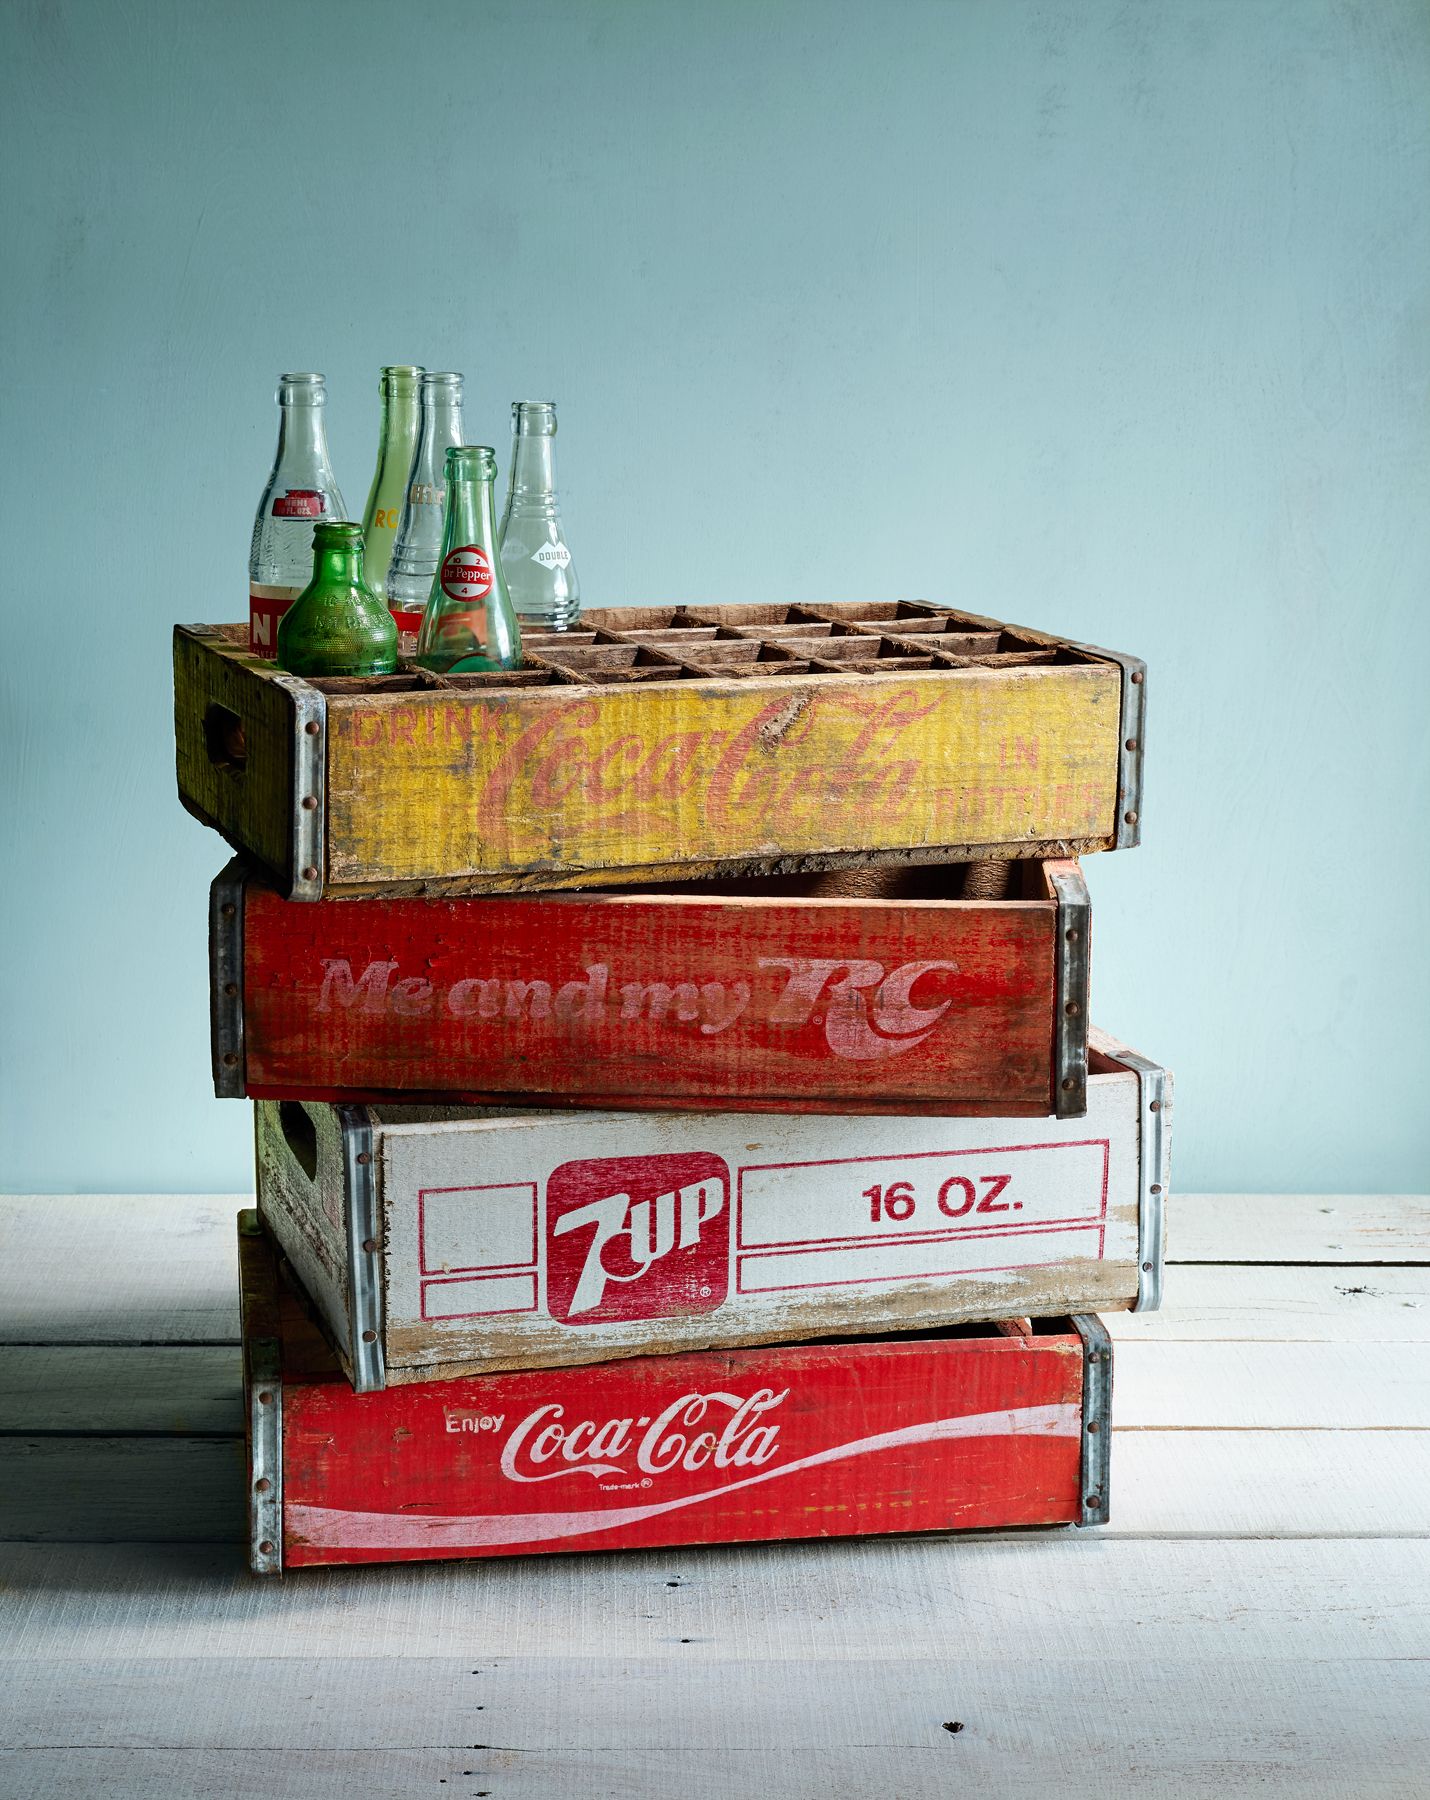 7up bottles value vintage Coca cola